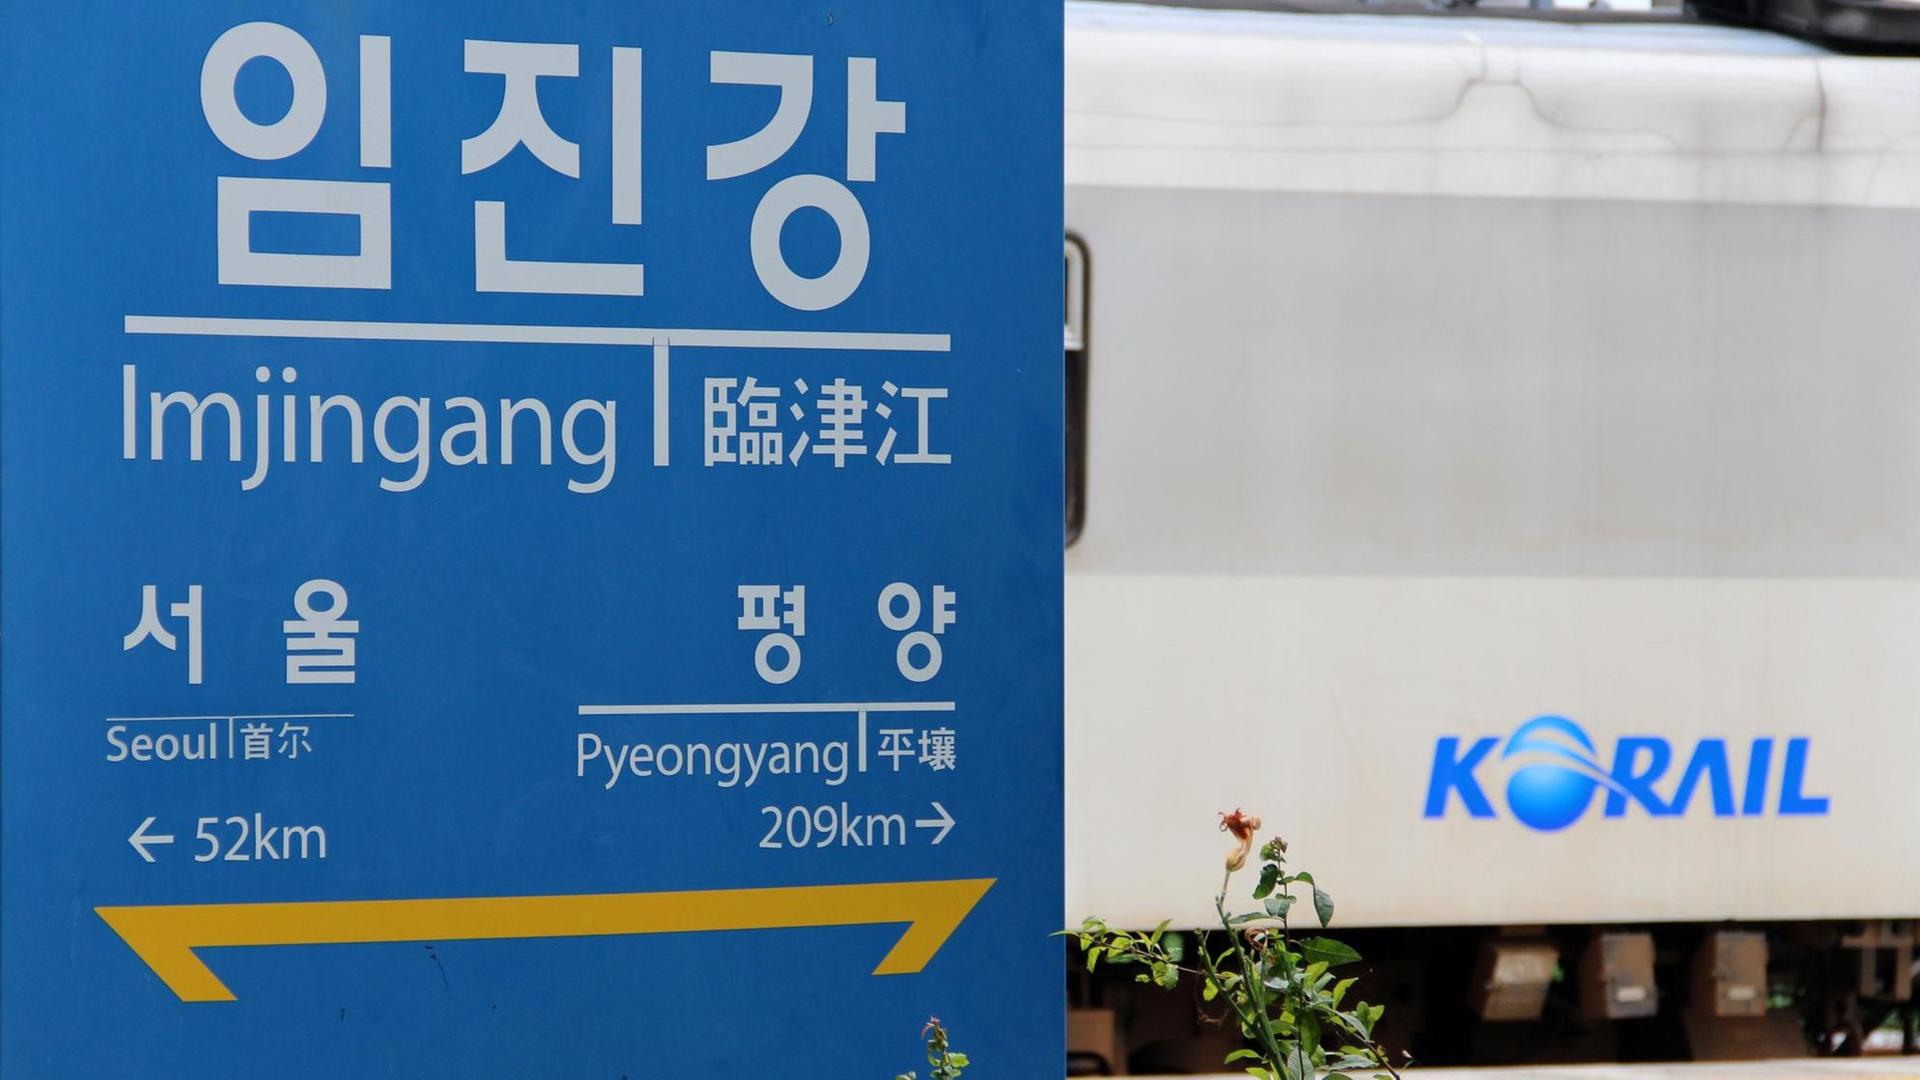 Schild an der koreanischen Grenze mit den Entfernungen zur südkoreanischen Hauptstadt Seoul und Pjöngjang in Nordkorea, dahinter ein Zug des südkoreanischen Eisenbahnunternehmens Korail.